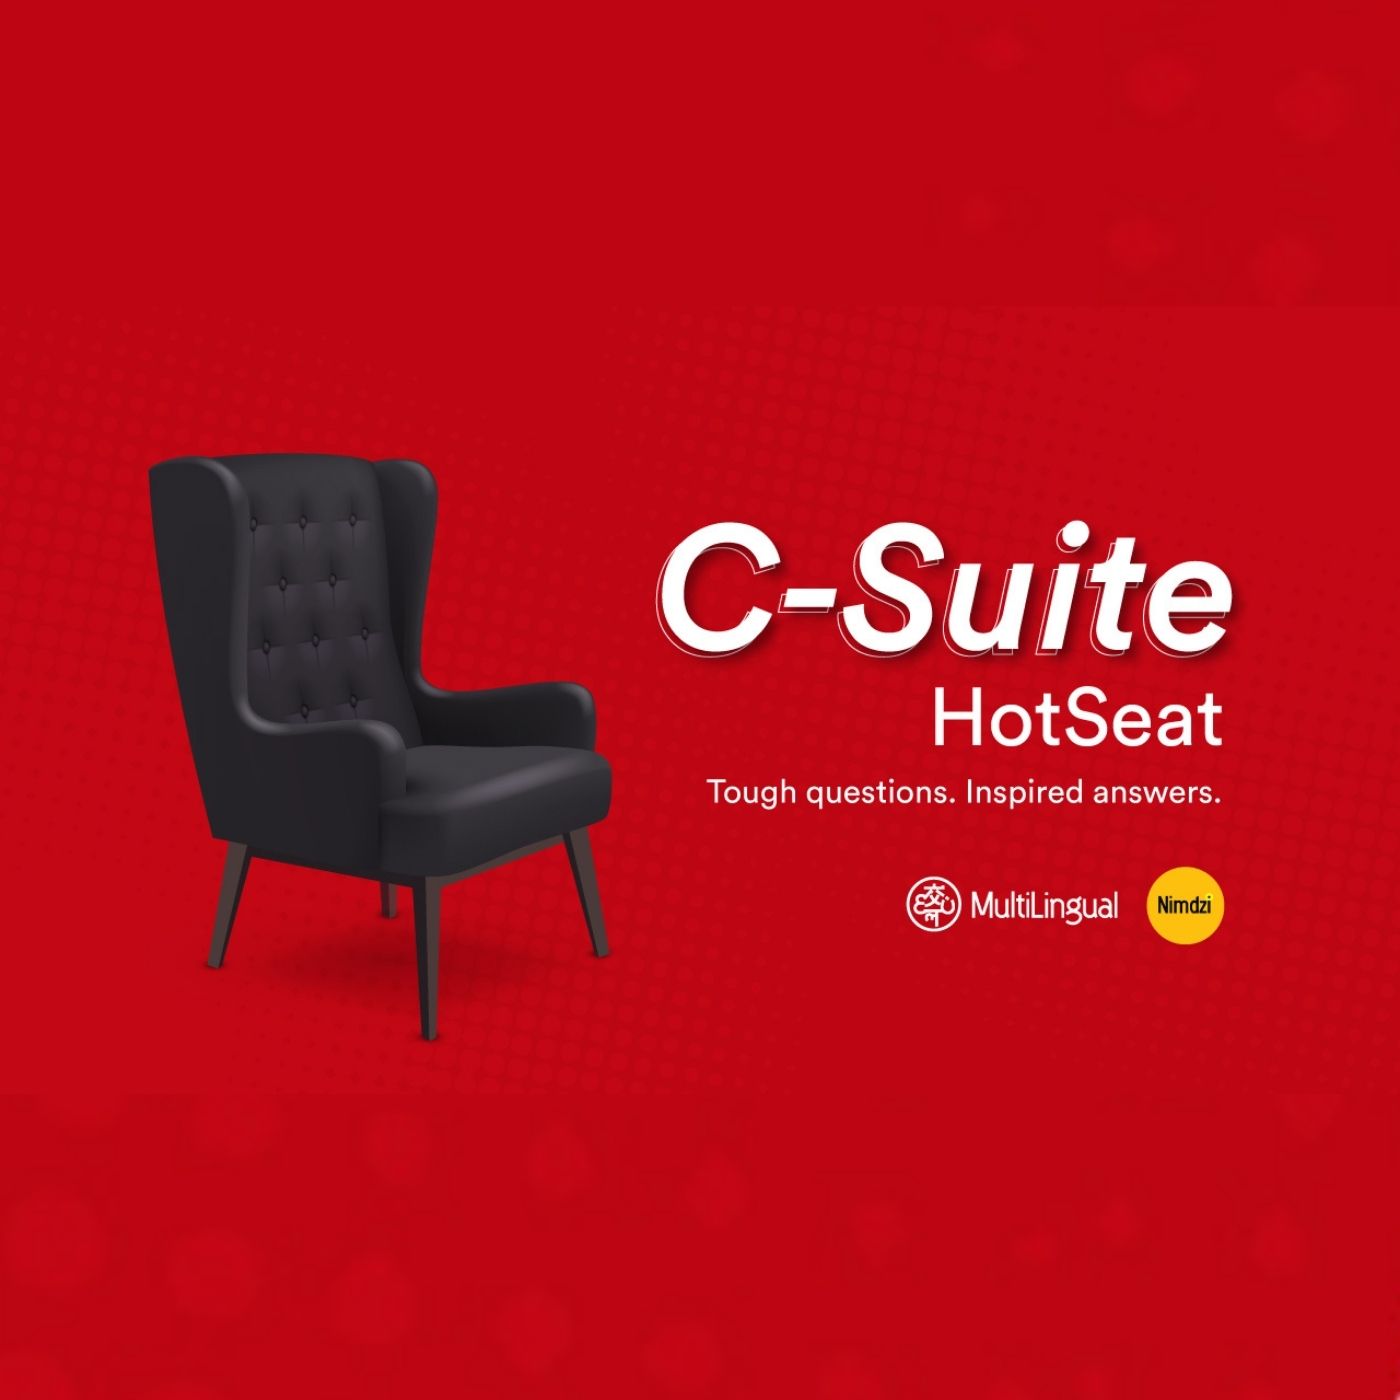 C-Suite HotSeat